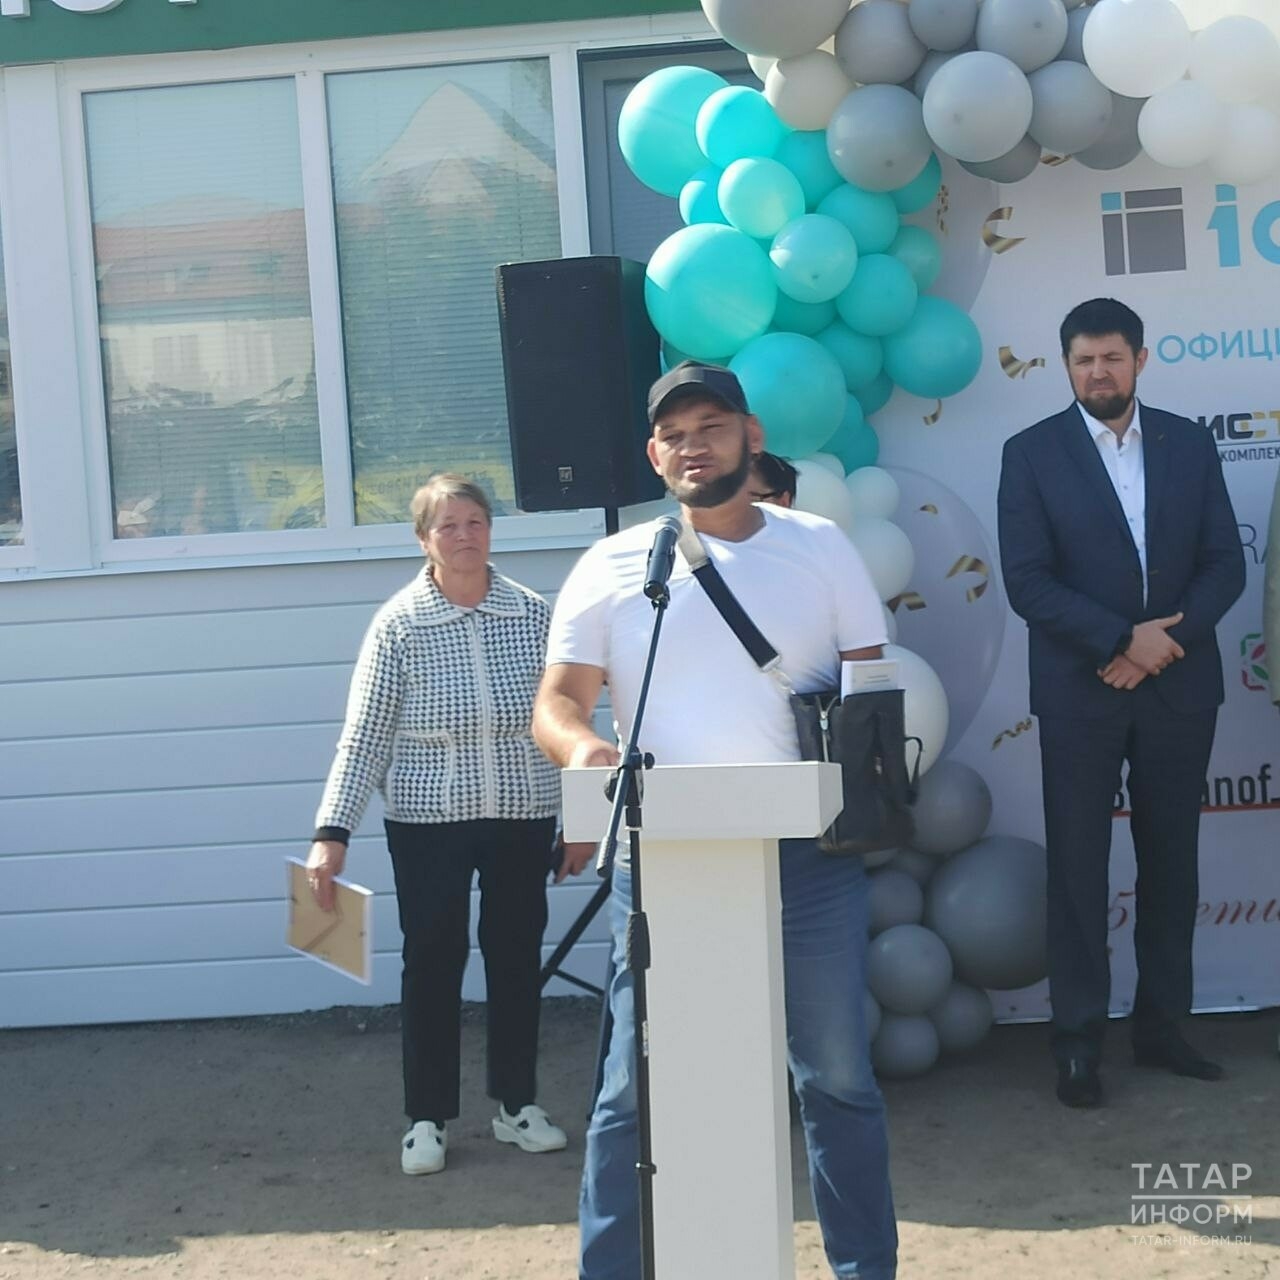 Инвалид без жилья из Татарстана рассказал, как нашел жену благодаря видеоролику